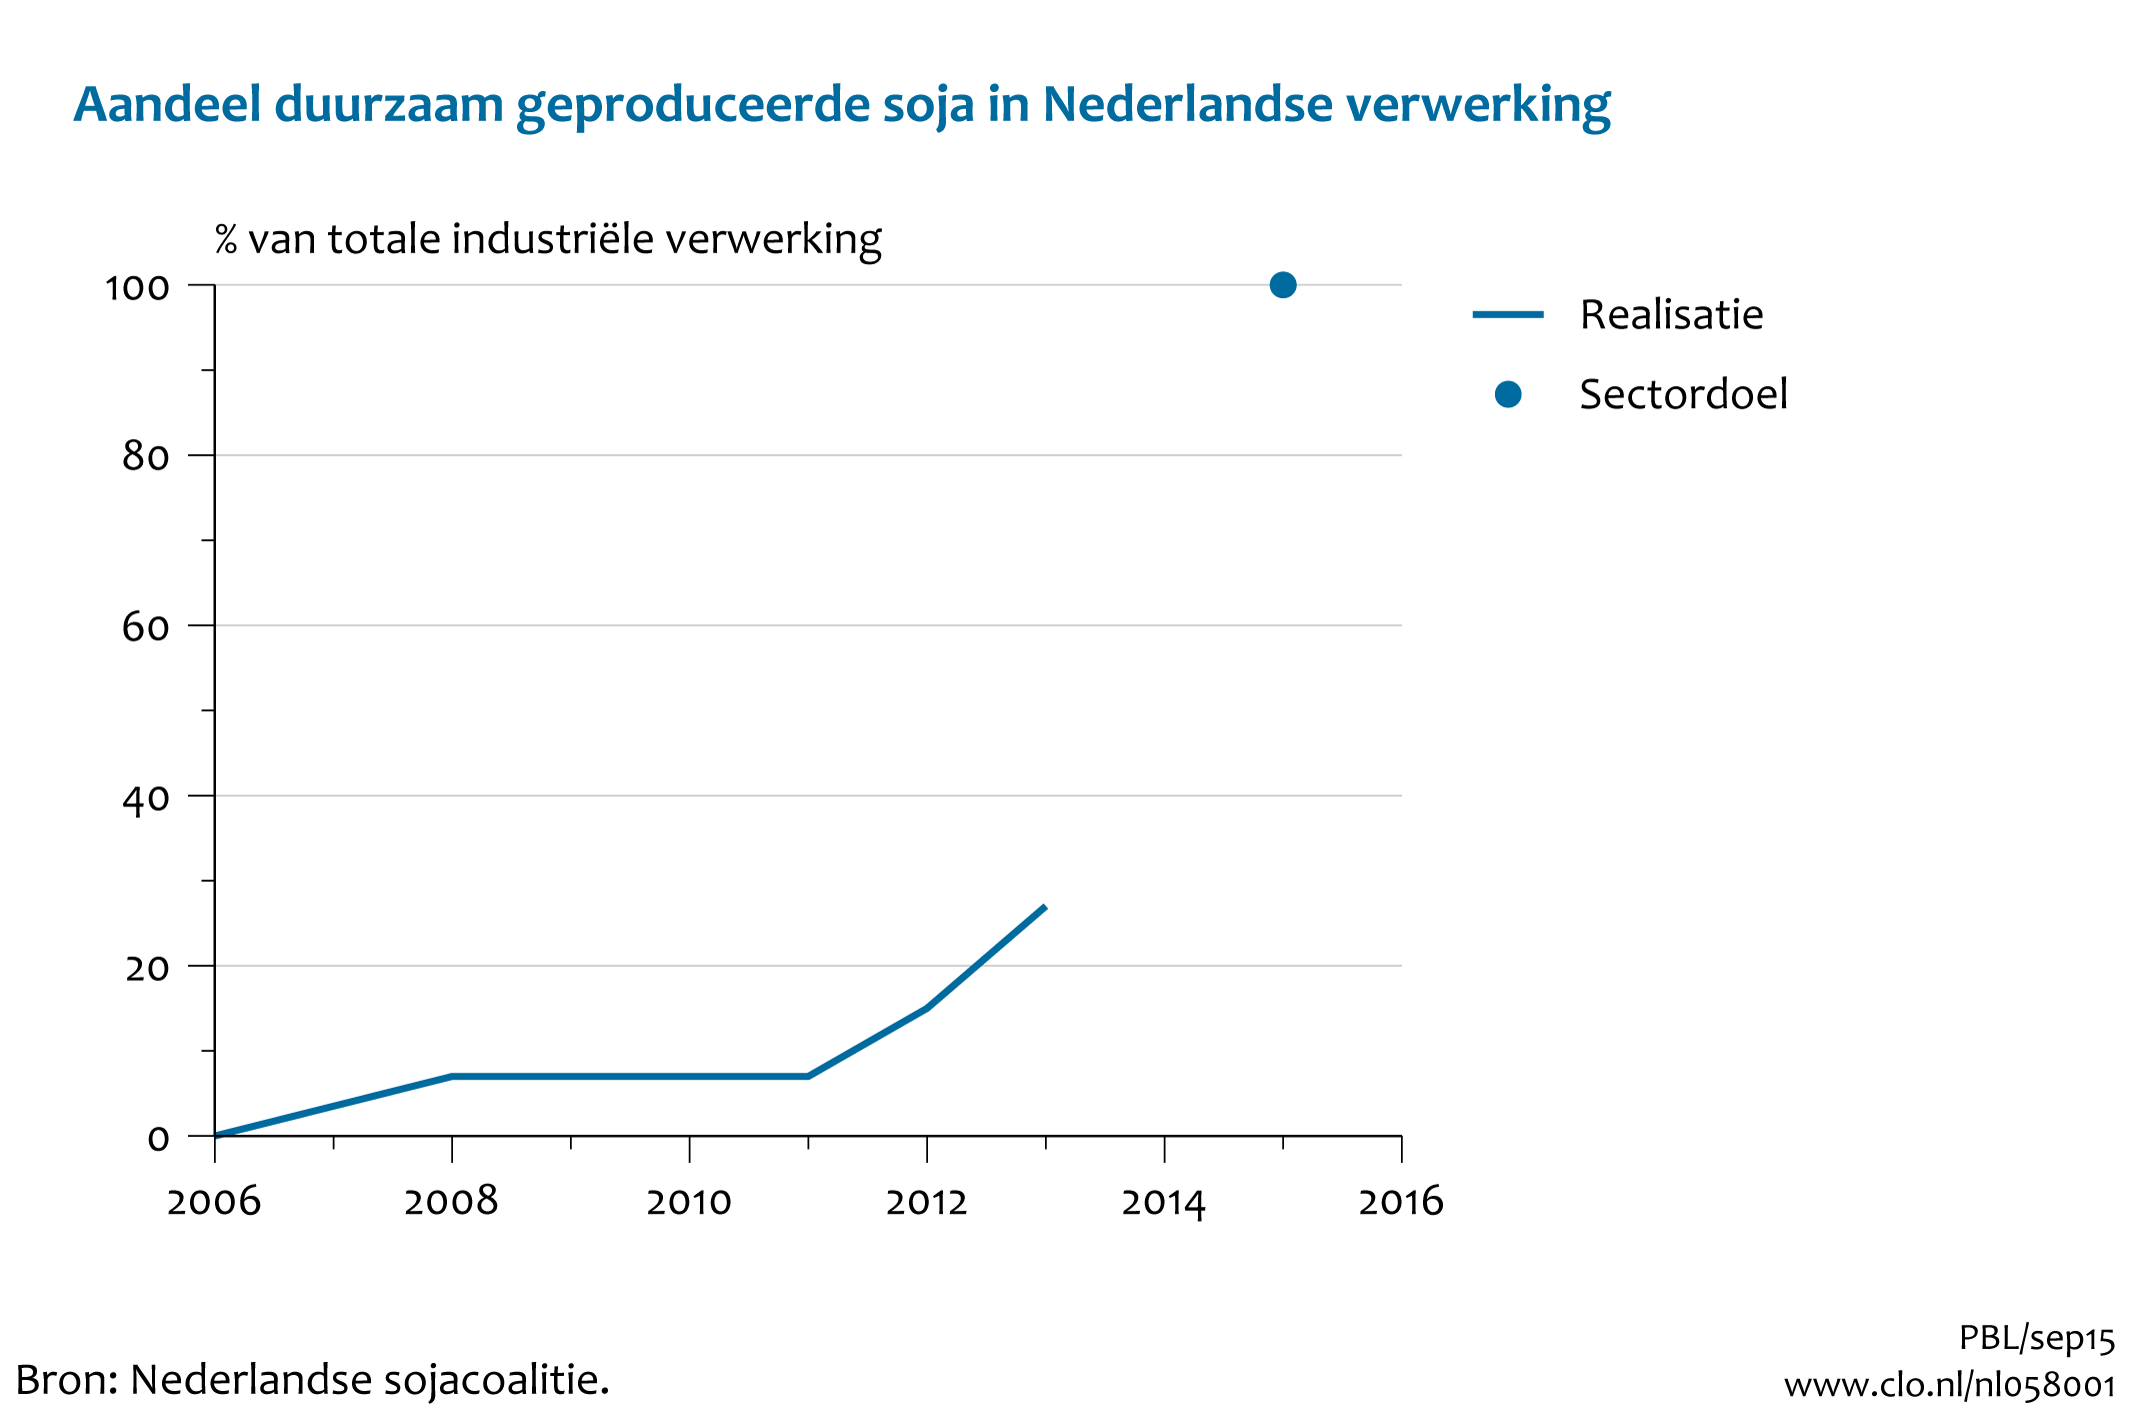 Figuur Aandeel van duurzaam geproduceerde soja in de Nederlandse industriële verwerking. In de rest van de tekst wordt deze figuur uitgebreider uitgelegd.